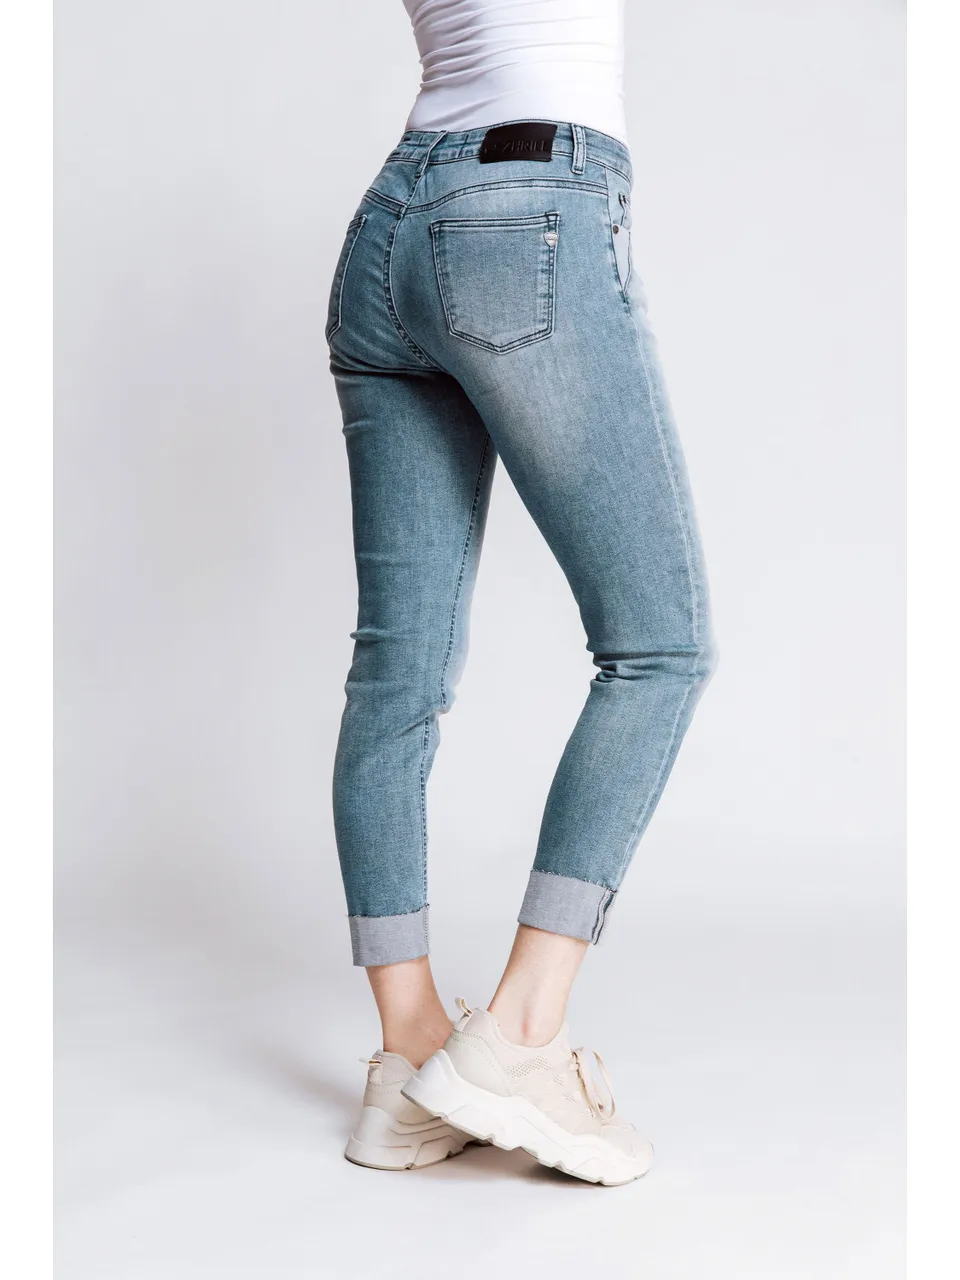 Zhrill Nova Jeans